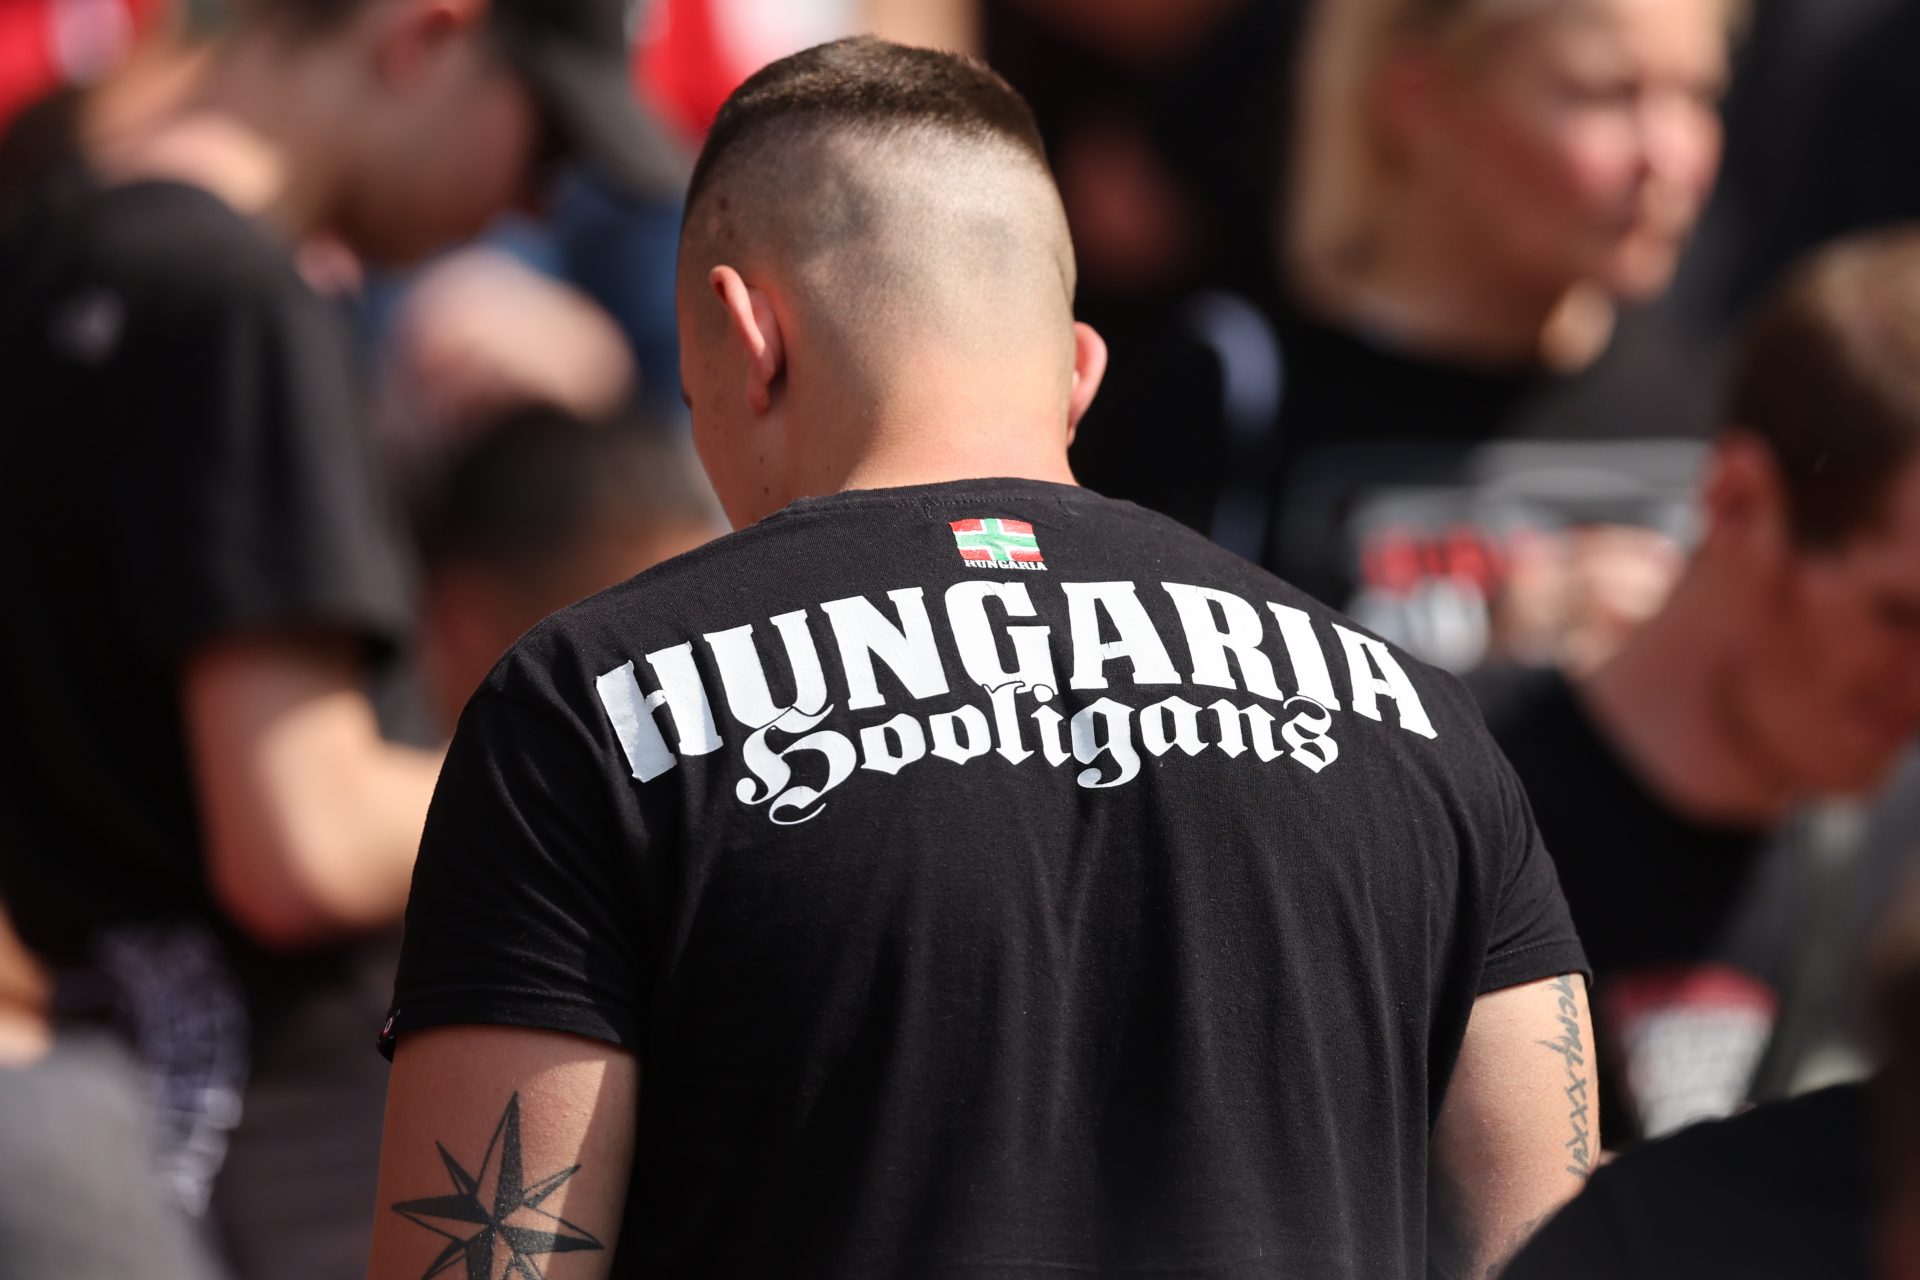 Vor EM-Partie Deutschland vs. Ungarn: Ungarische Hardcore-Hooligans geben Warnung ab